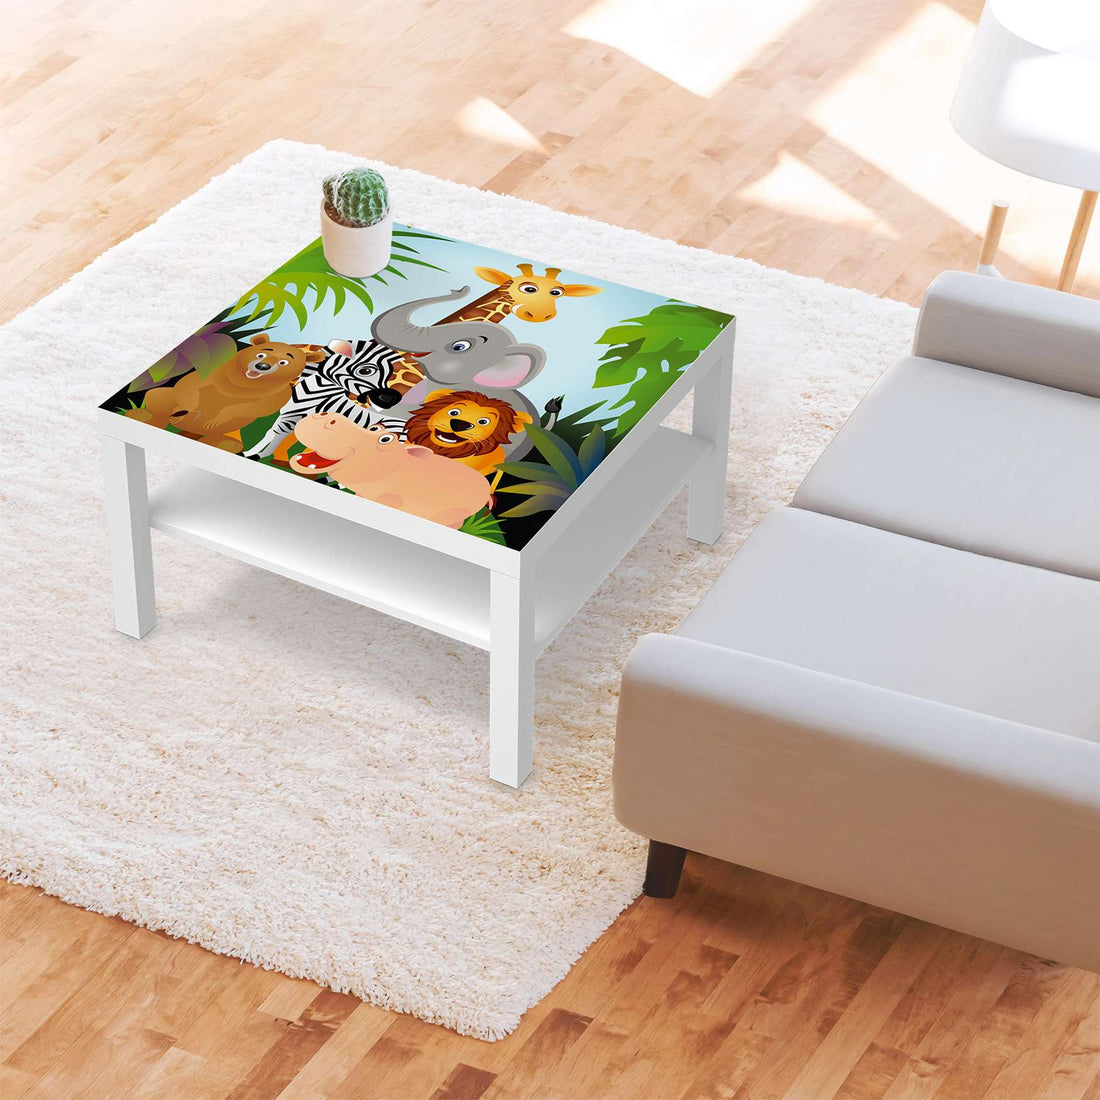 Selbstklebende Folie Wild Animals - IKEA Lack Tisch 78x78 cm - Kinderzimmer